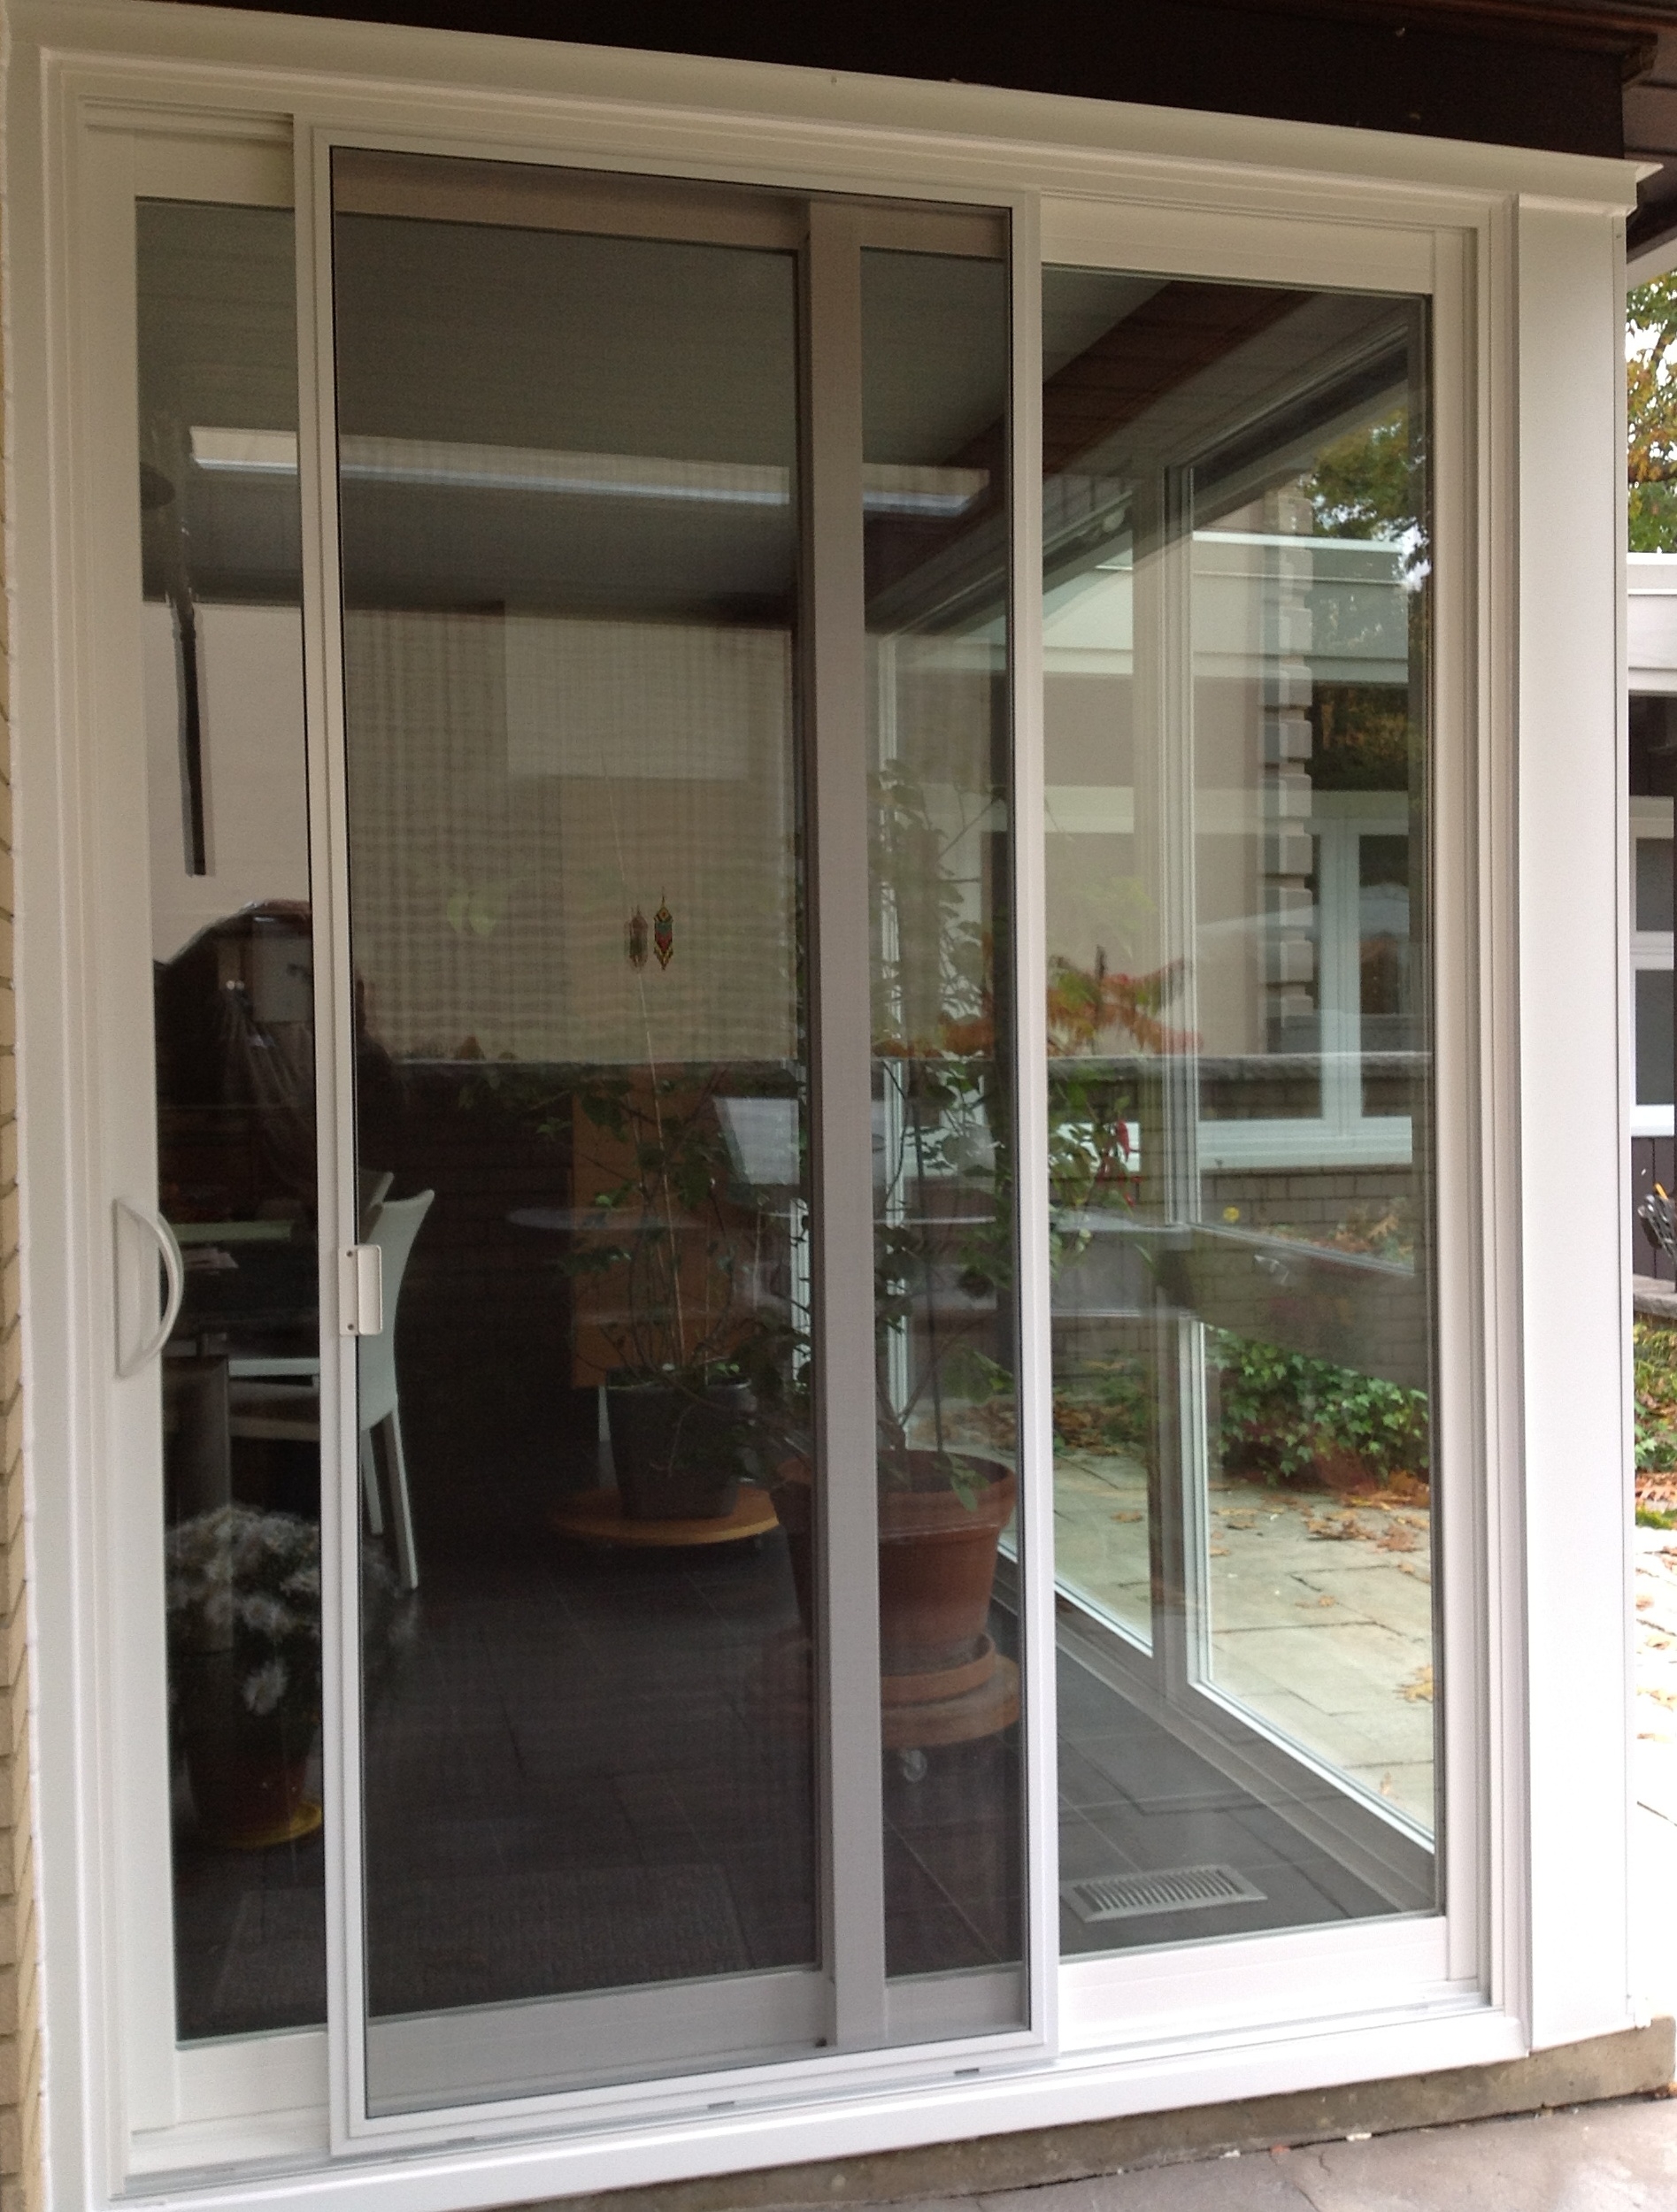 Sliding Glass Patio Doors With Screendoor sliding patio doors with screens theflowerlab interior design